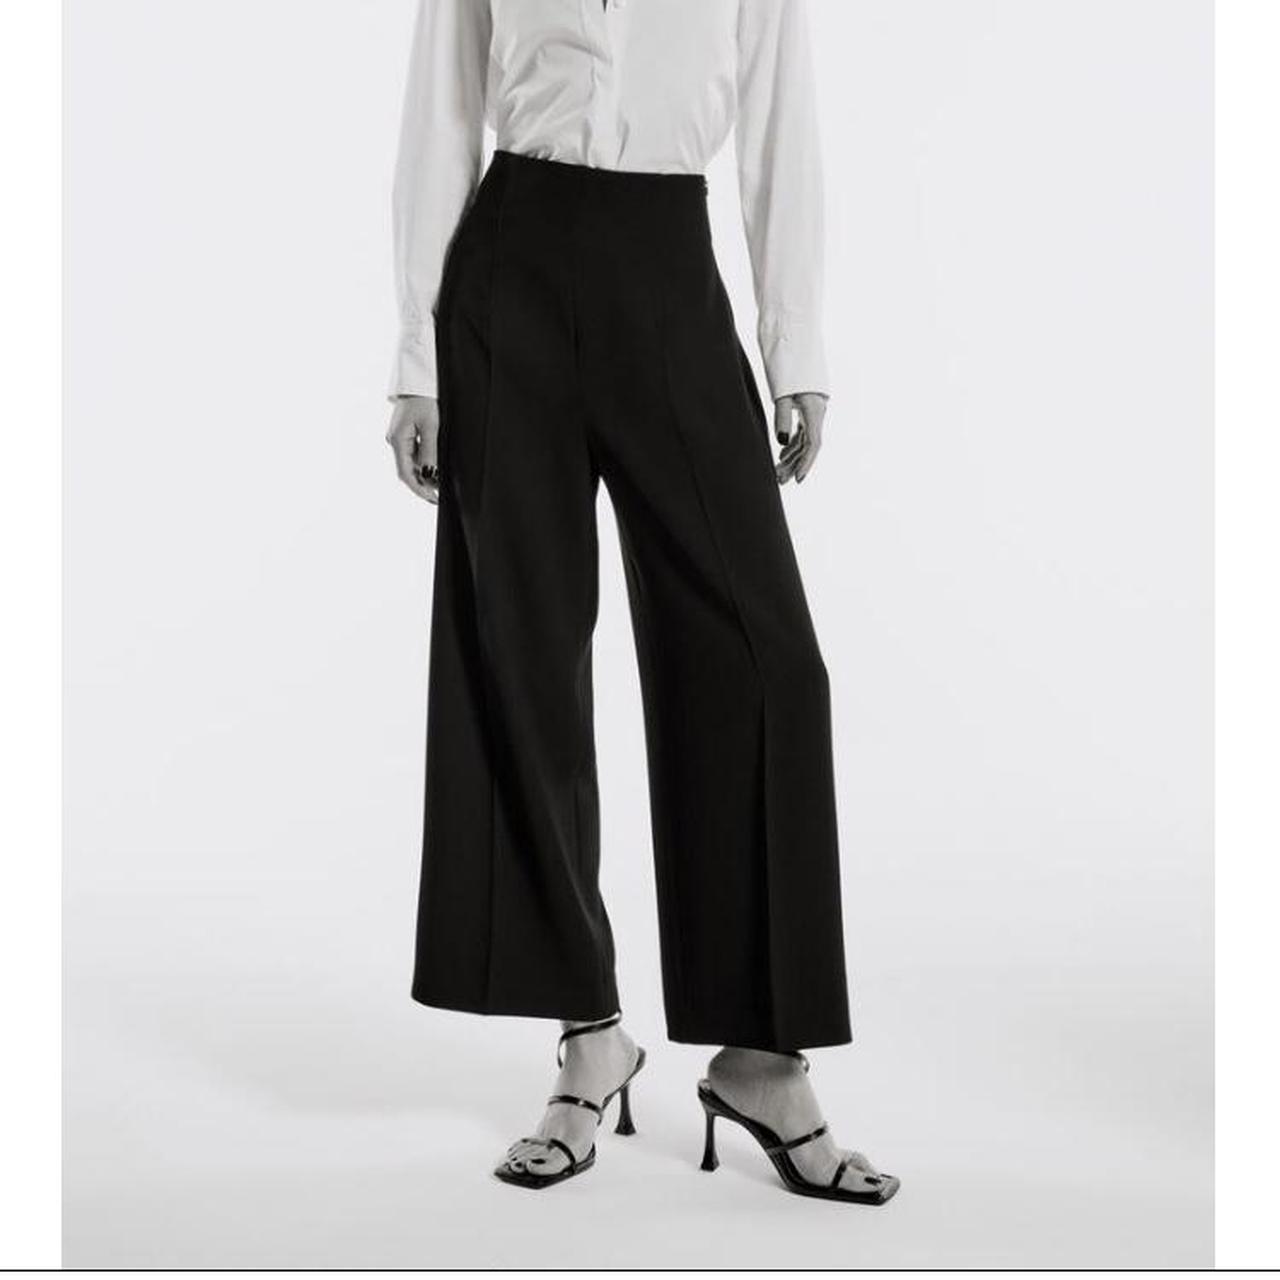 Zara high-waist-trousers - Depop